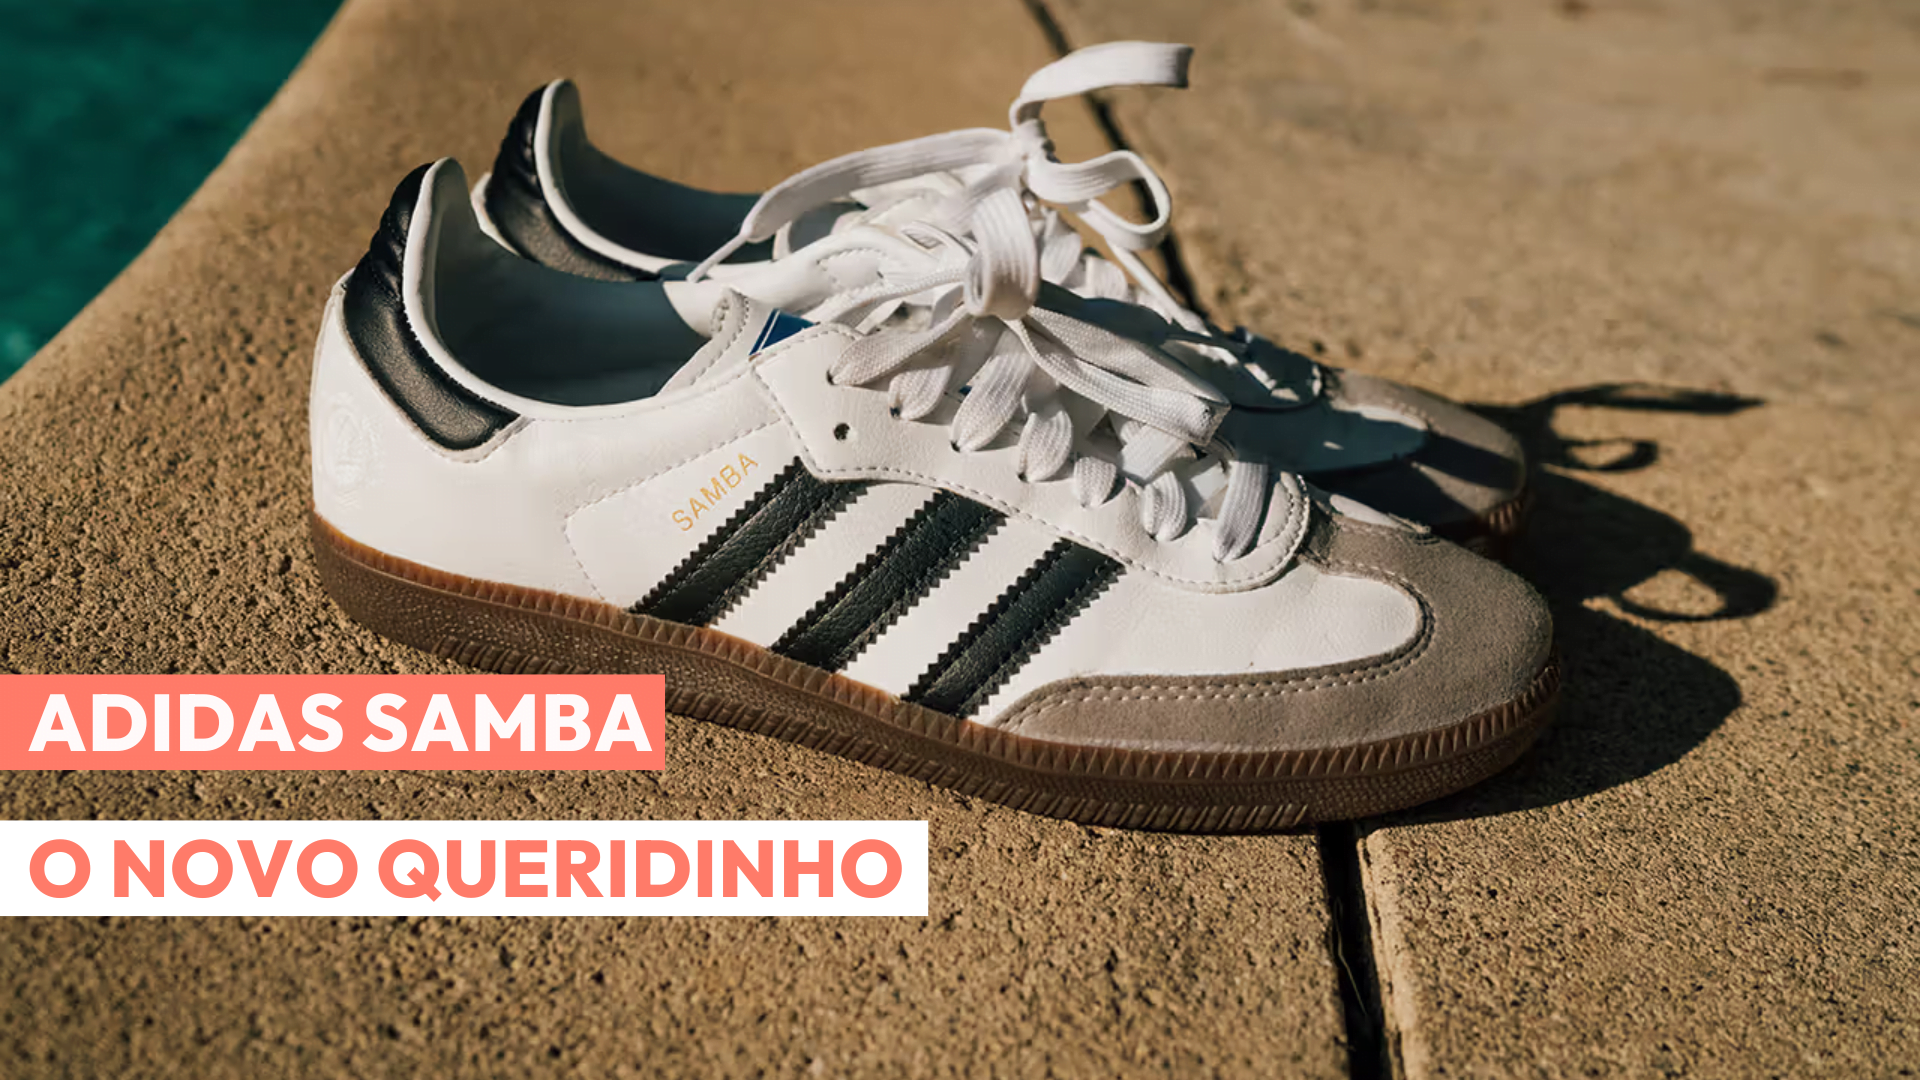 Imagem do tênis Adidas Samba em destaque com o texto tema em vermelho e branco.